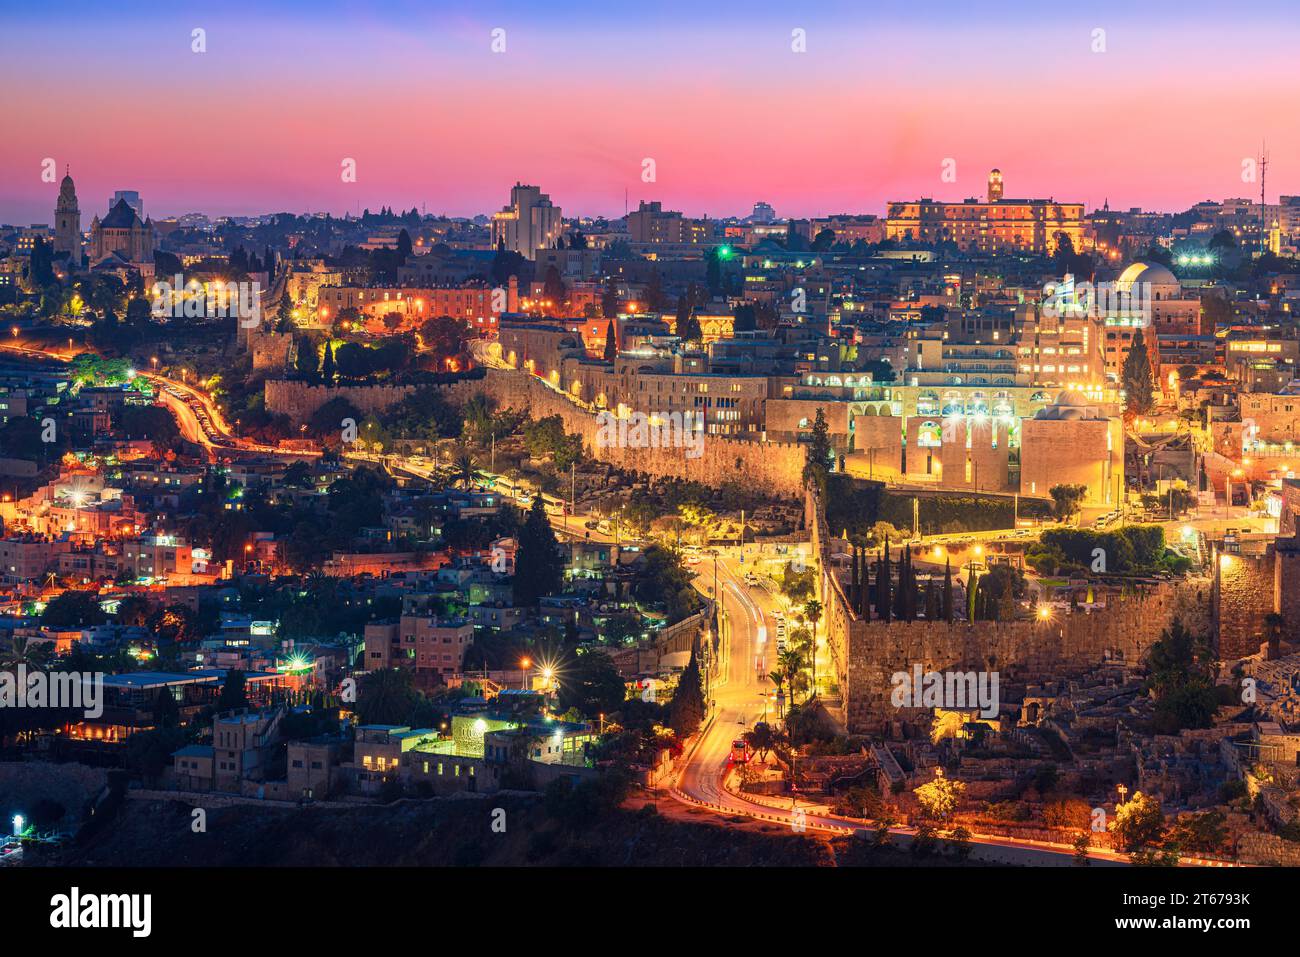 Vue panoramique du quartier juif de la vieille ville de Jérusalem au crépuscule Banque D'Images